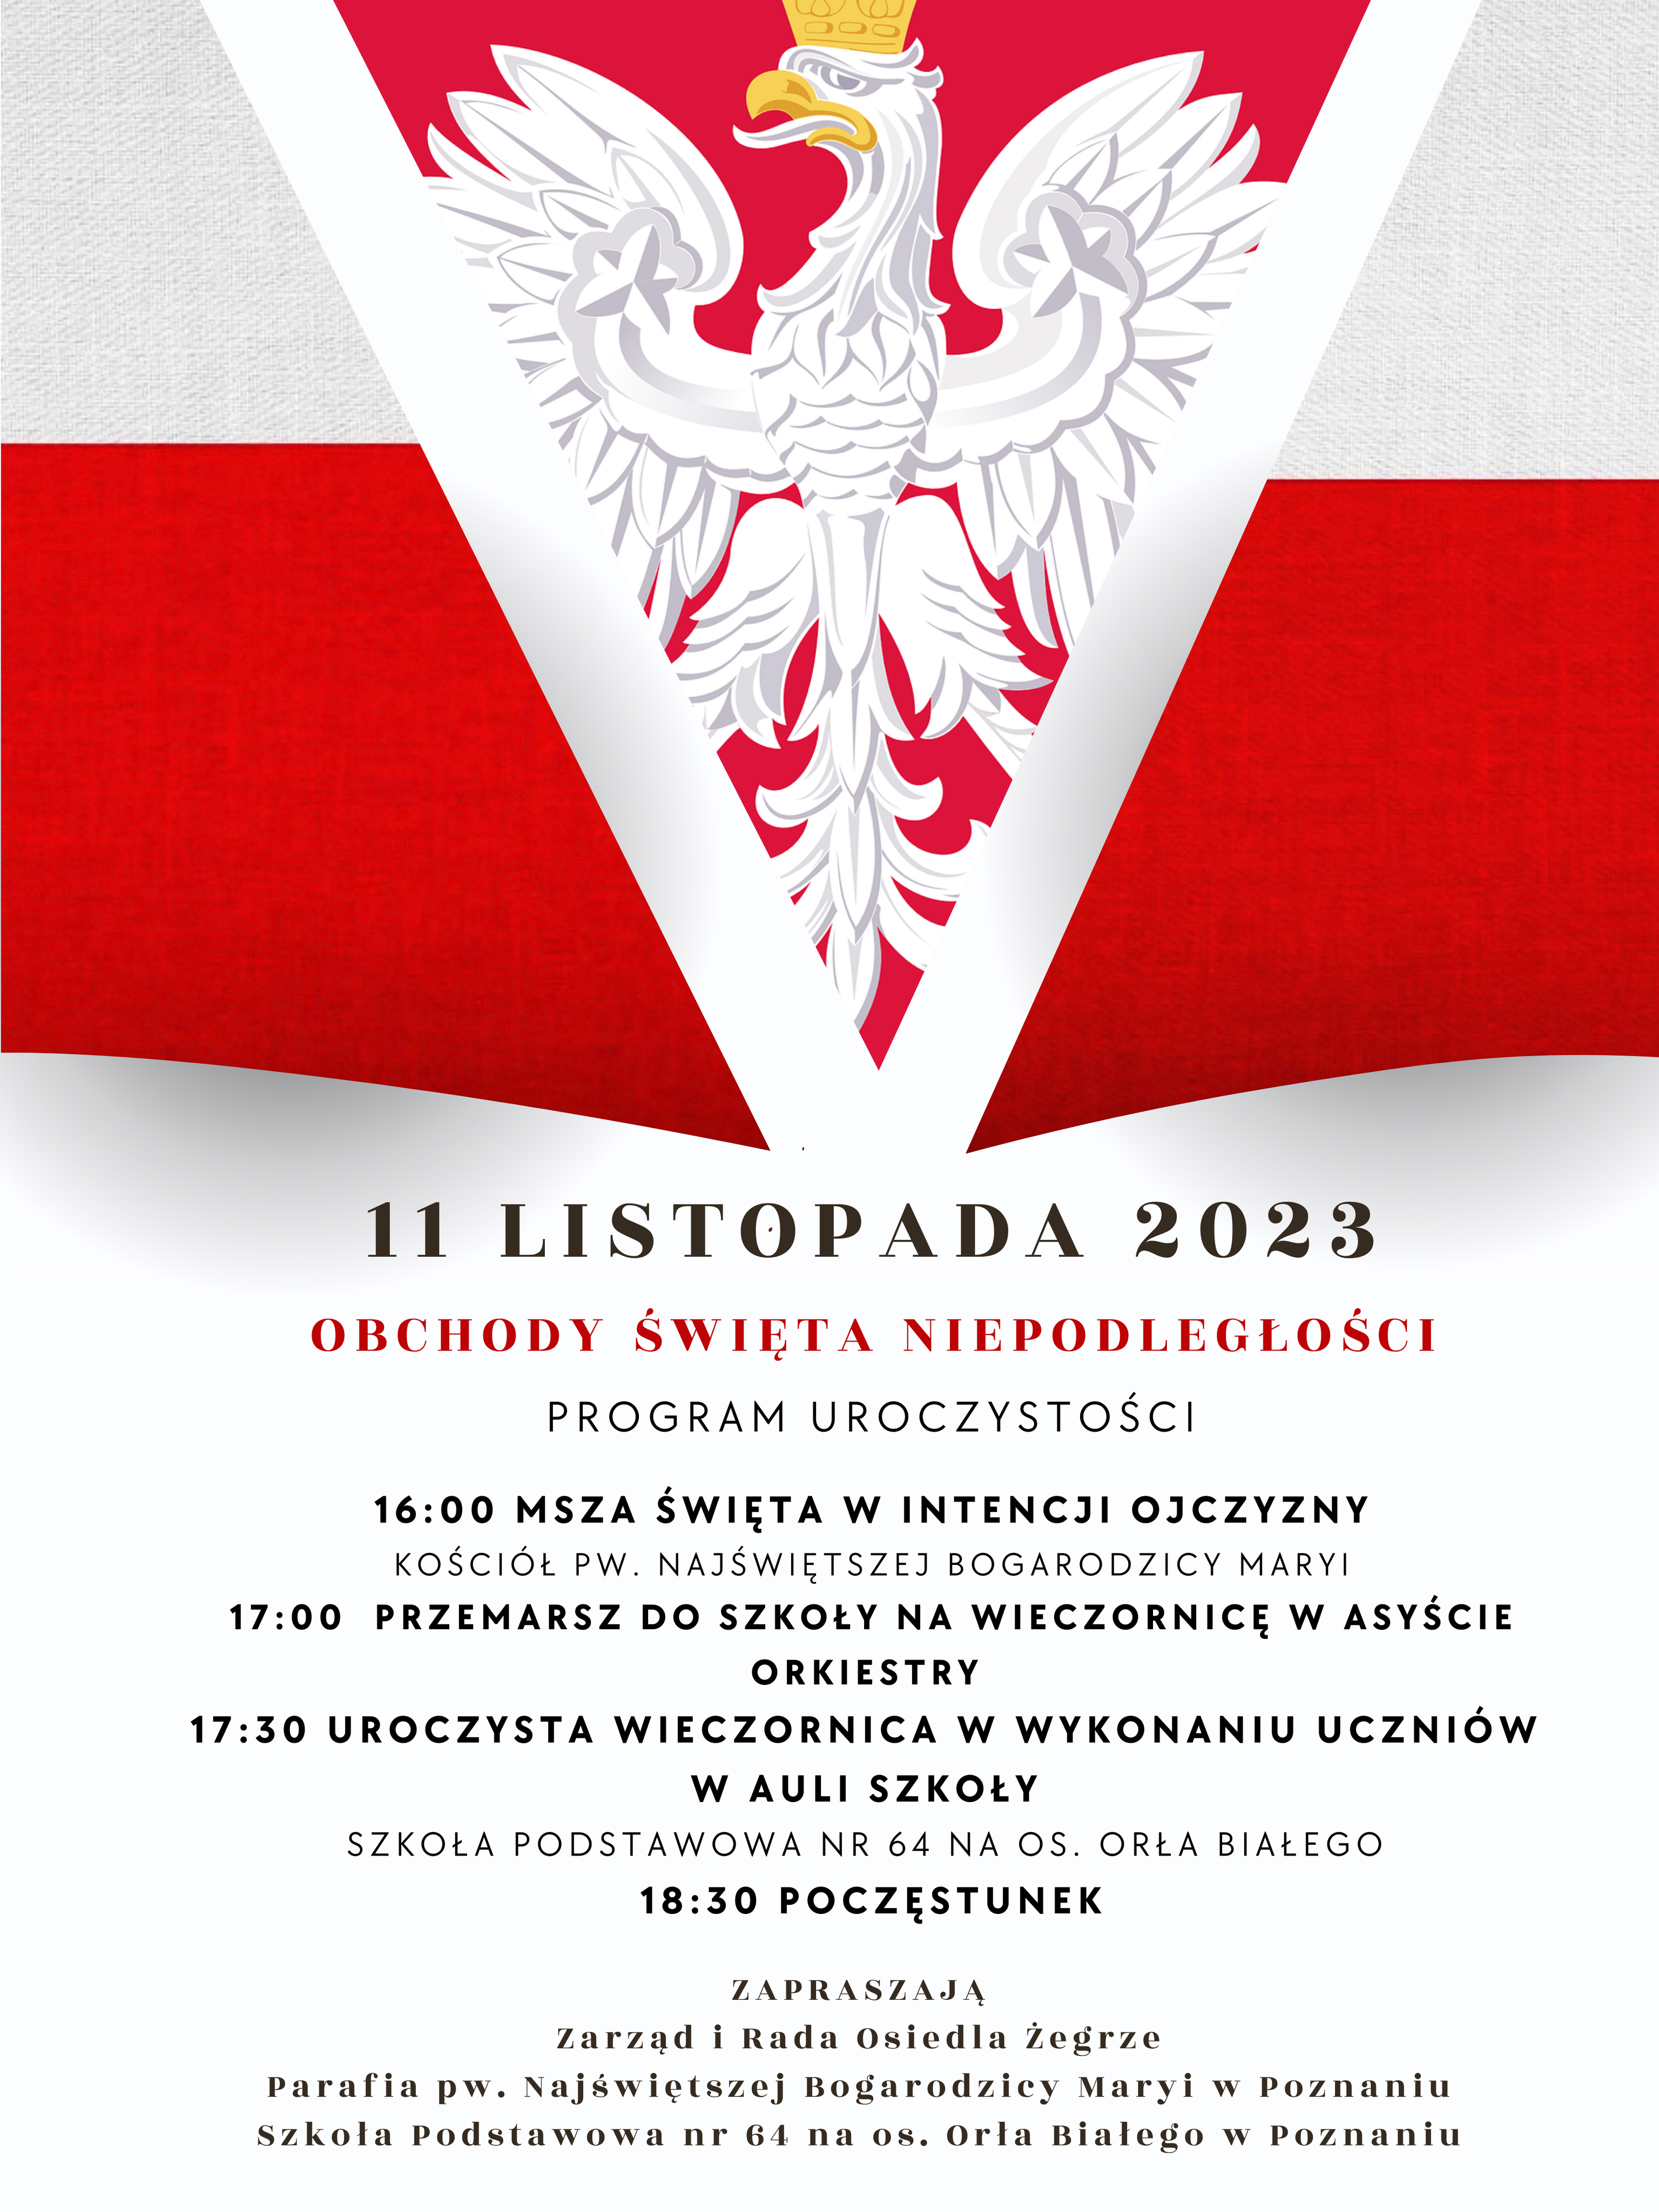 Plakat przedstawia białego orzełka na czerwonym tle (przypomina polską flagę) oraz program obchodów opisany niżej w treści artykułu. 